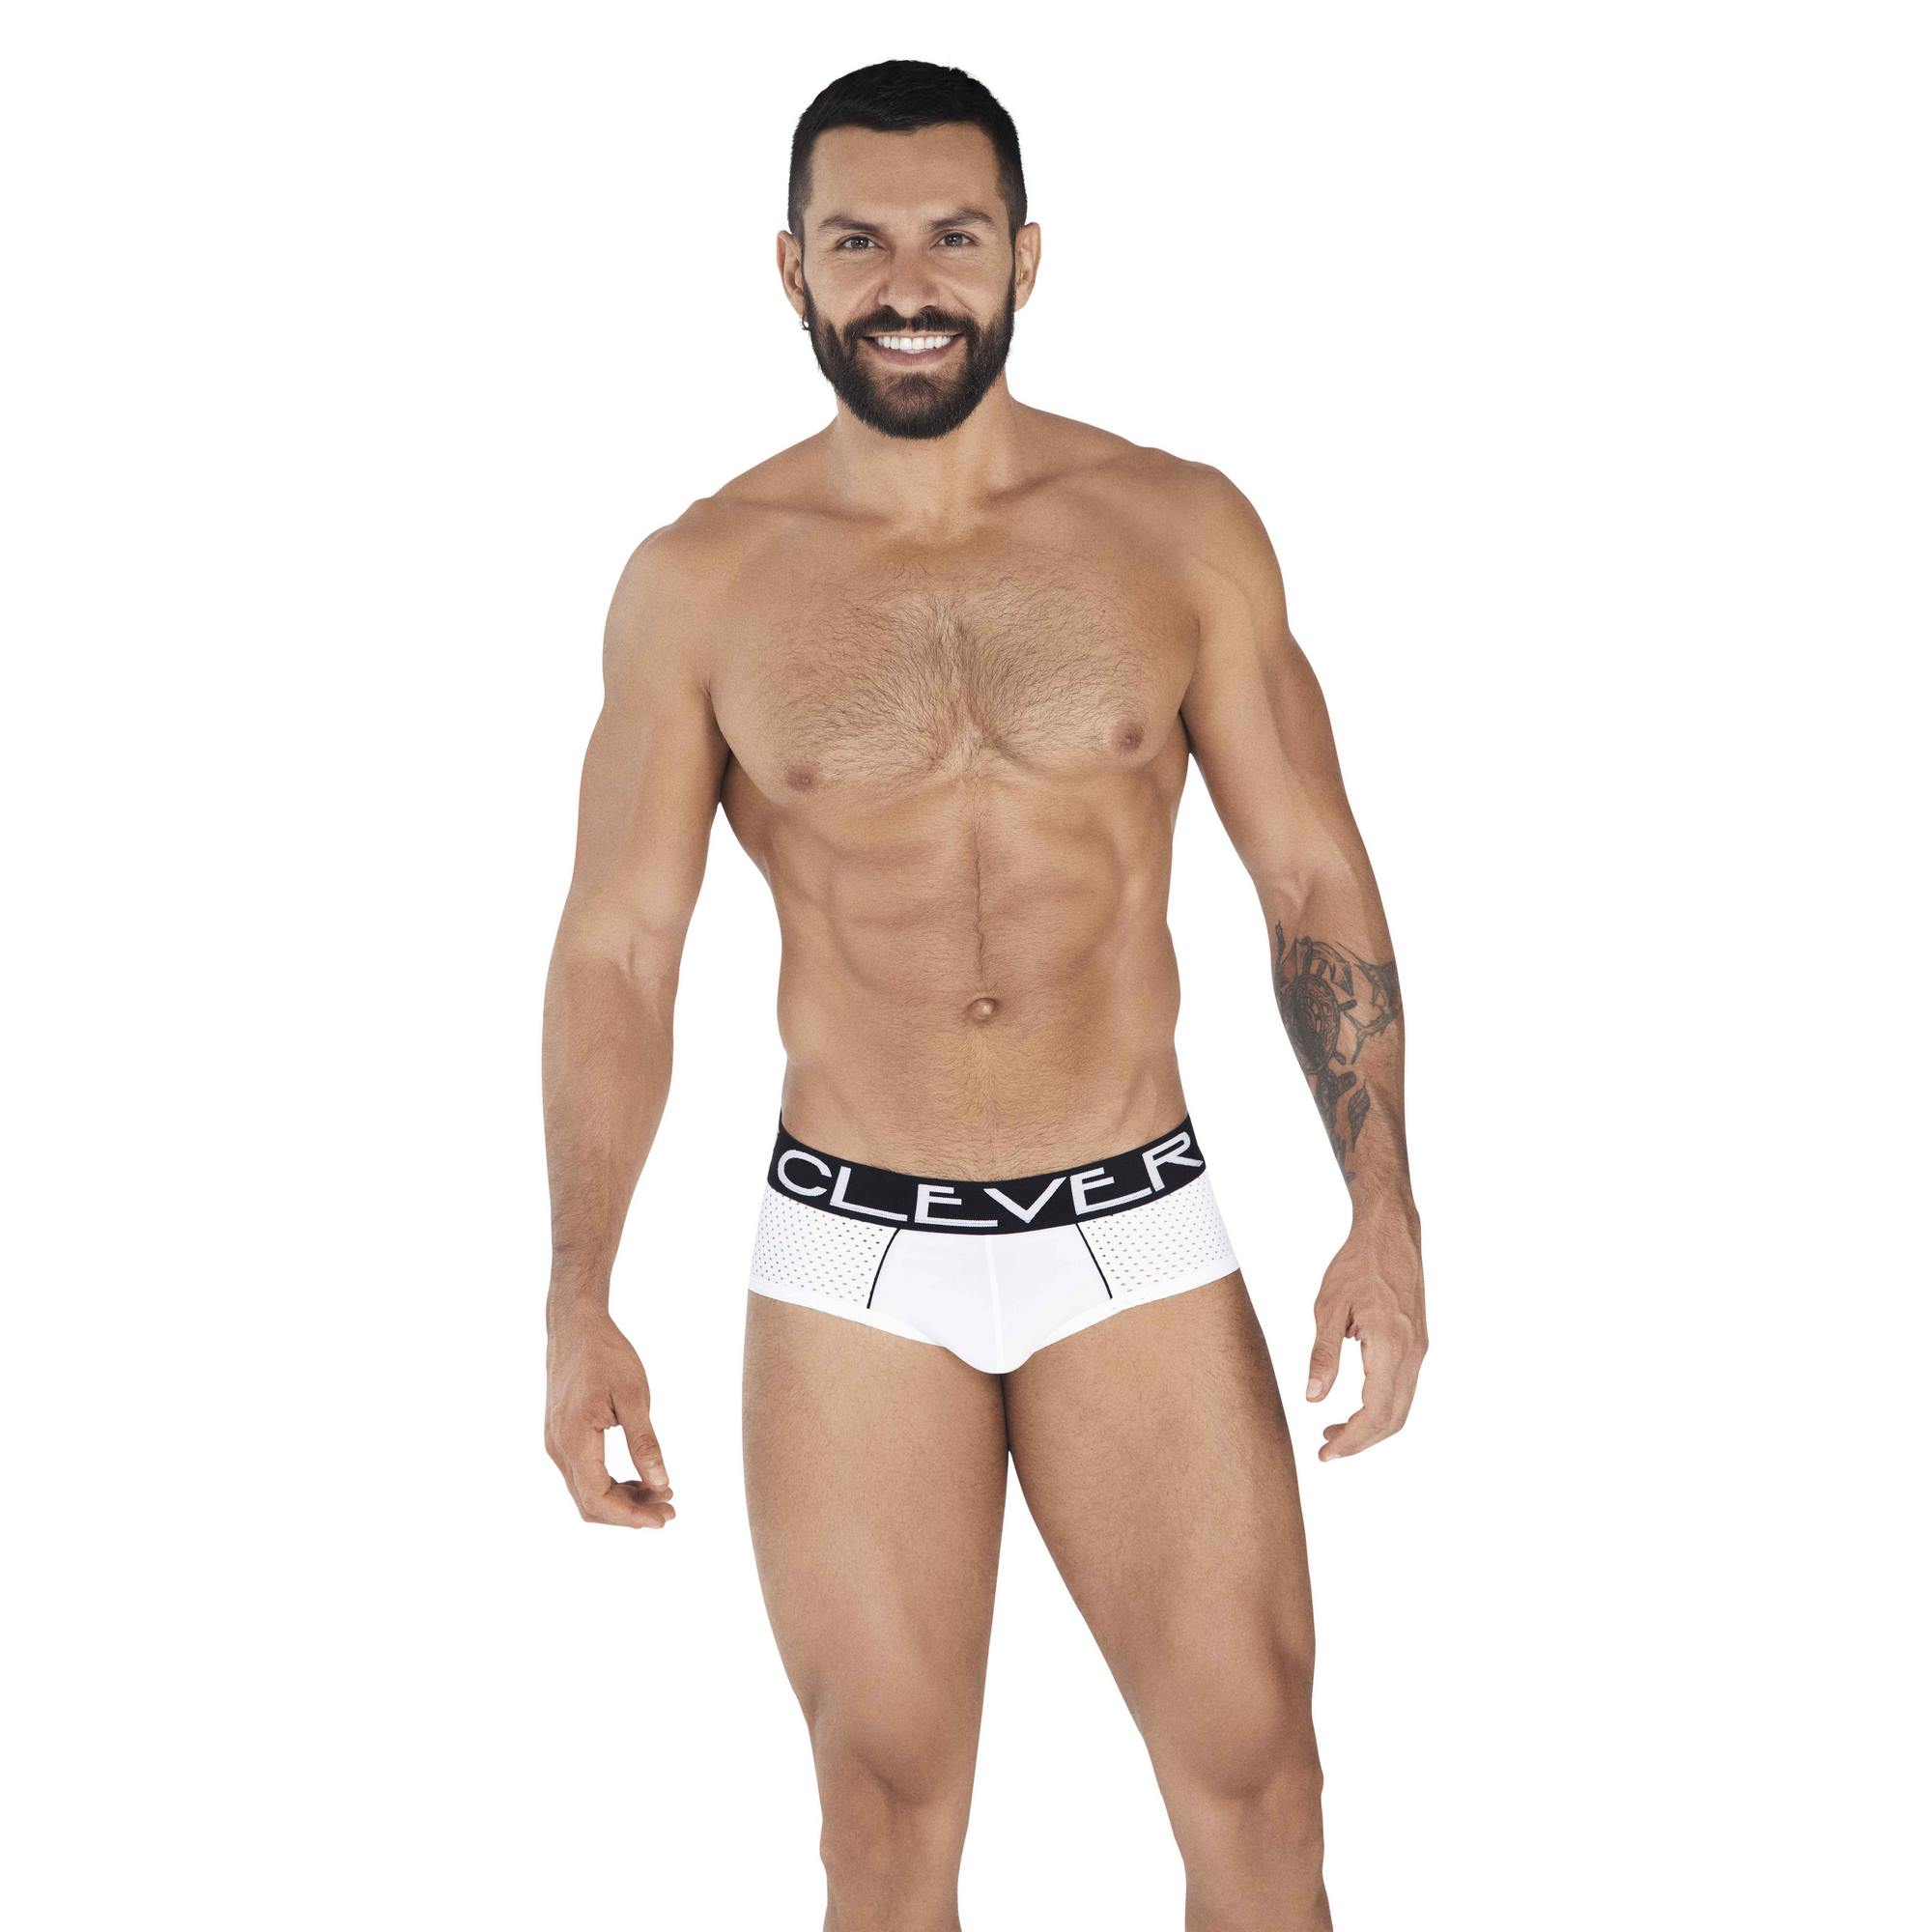 Трусы мужские Clever Masculine Underwear 0362 белые M